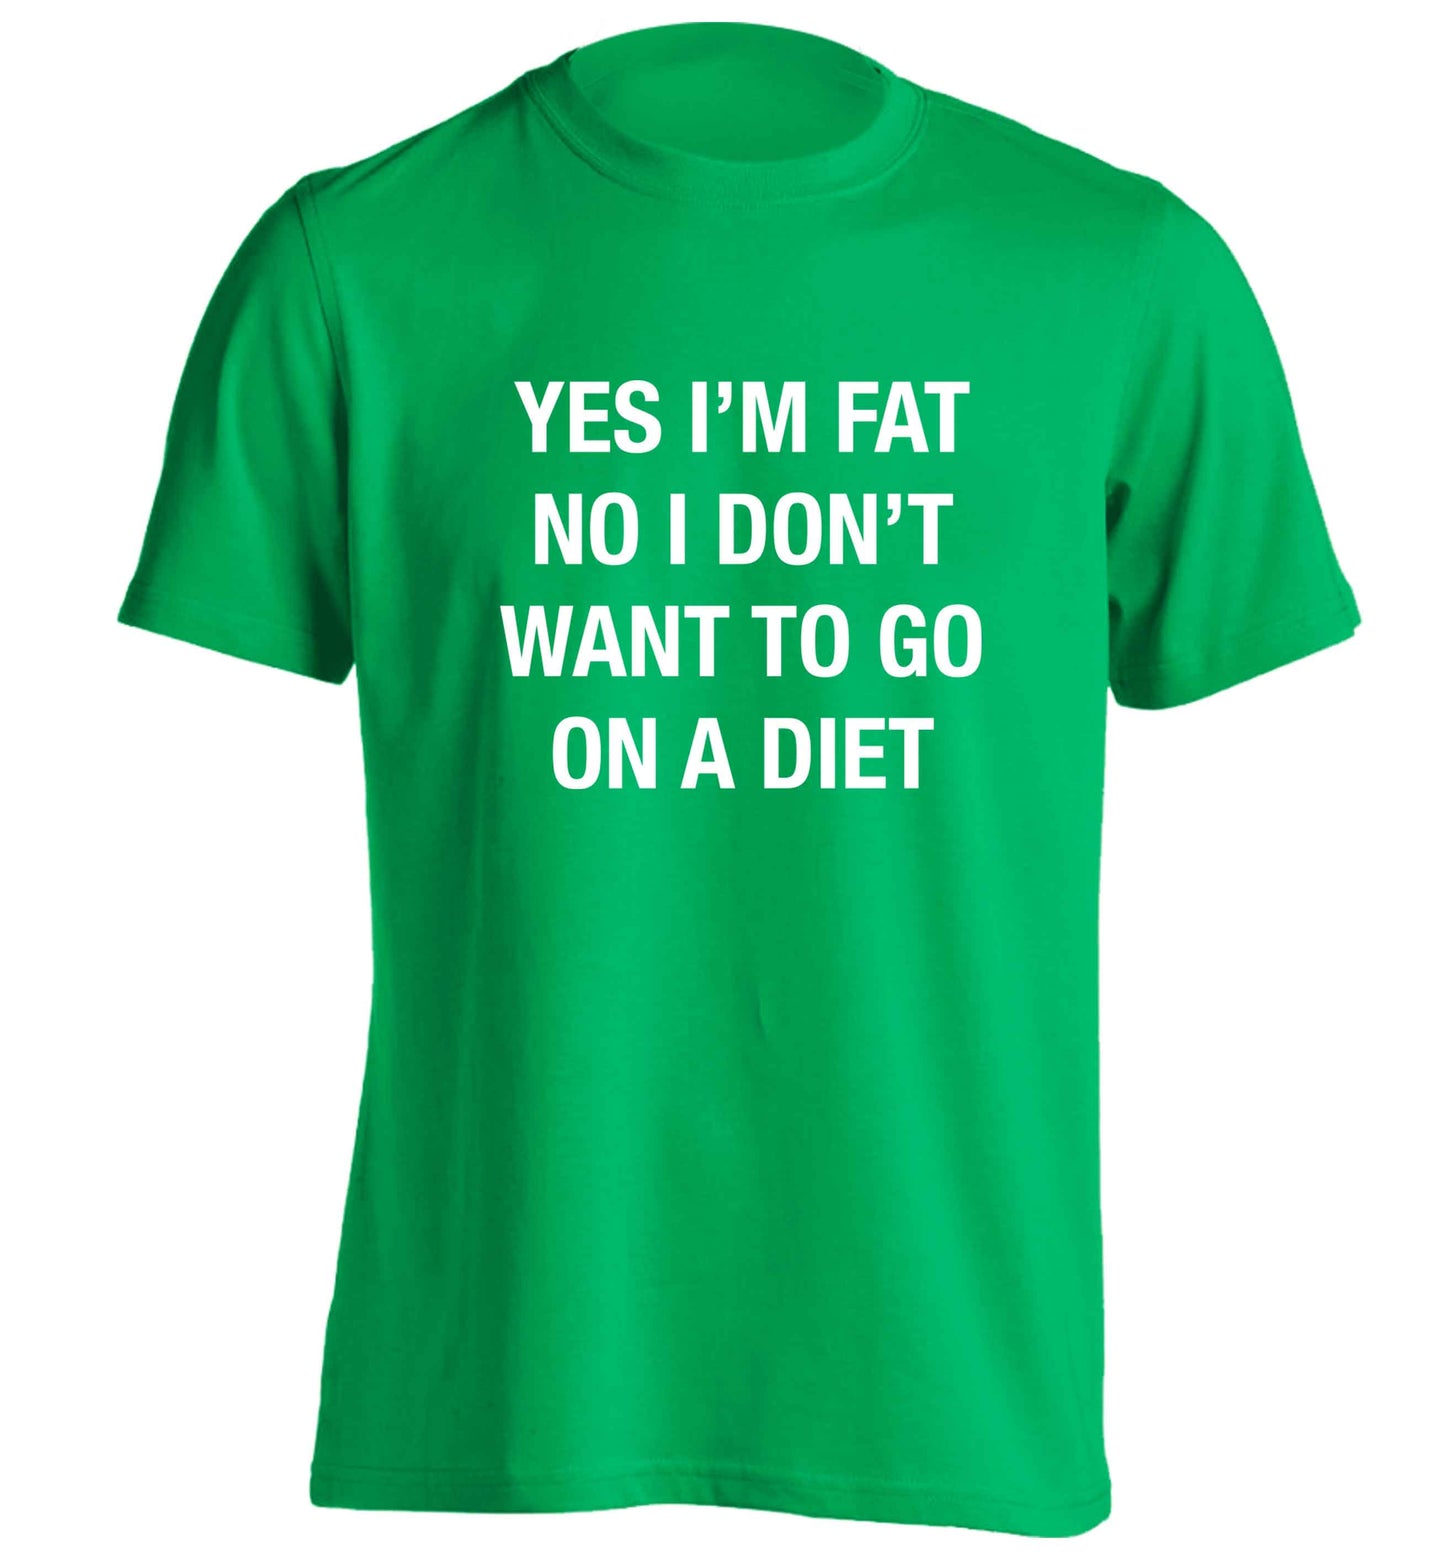 Yes I'm fat, no I don't want to go on a diet adults unisex green Tshirt 2XL